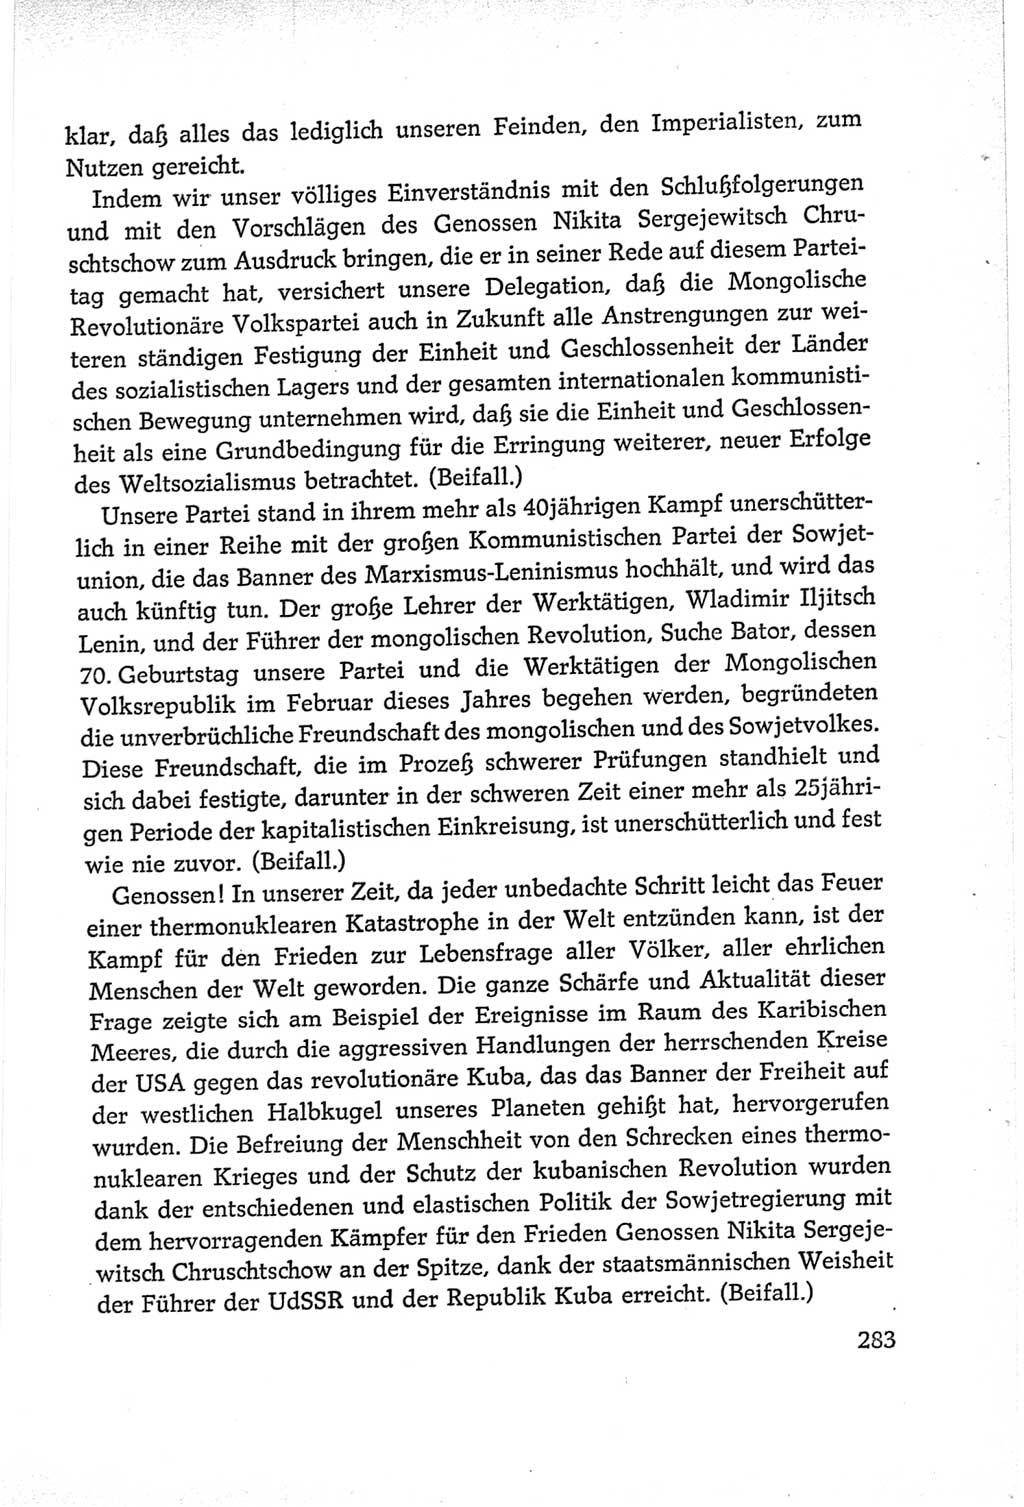 Protokoll der Verhandlungen des Ⅵ. Parteitages der Sozialistischen Einheitspartei Deutschlands (SED) [Deutsche Demokratische Republik (DDR)] 1963, Band Ⅱ, Seite 283 (Prot. Verh. Ⅵ. PT SED DDR 1963, Bd. Ⅱ, S. 283)